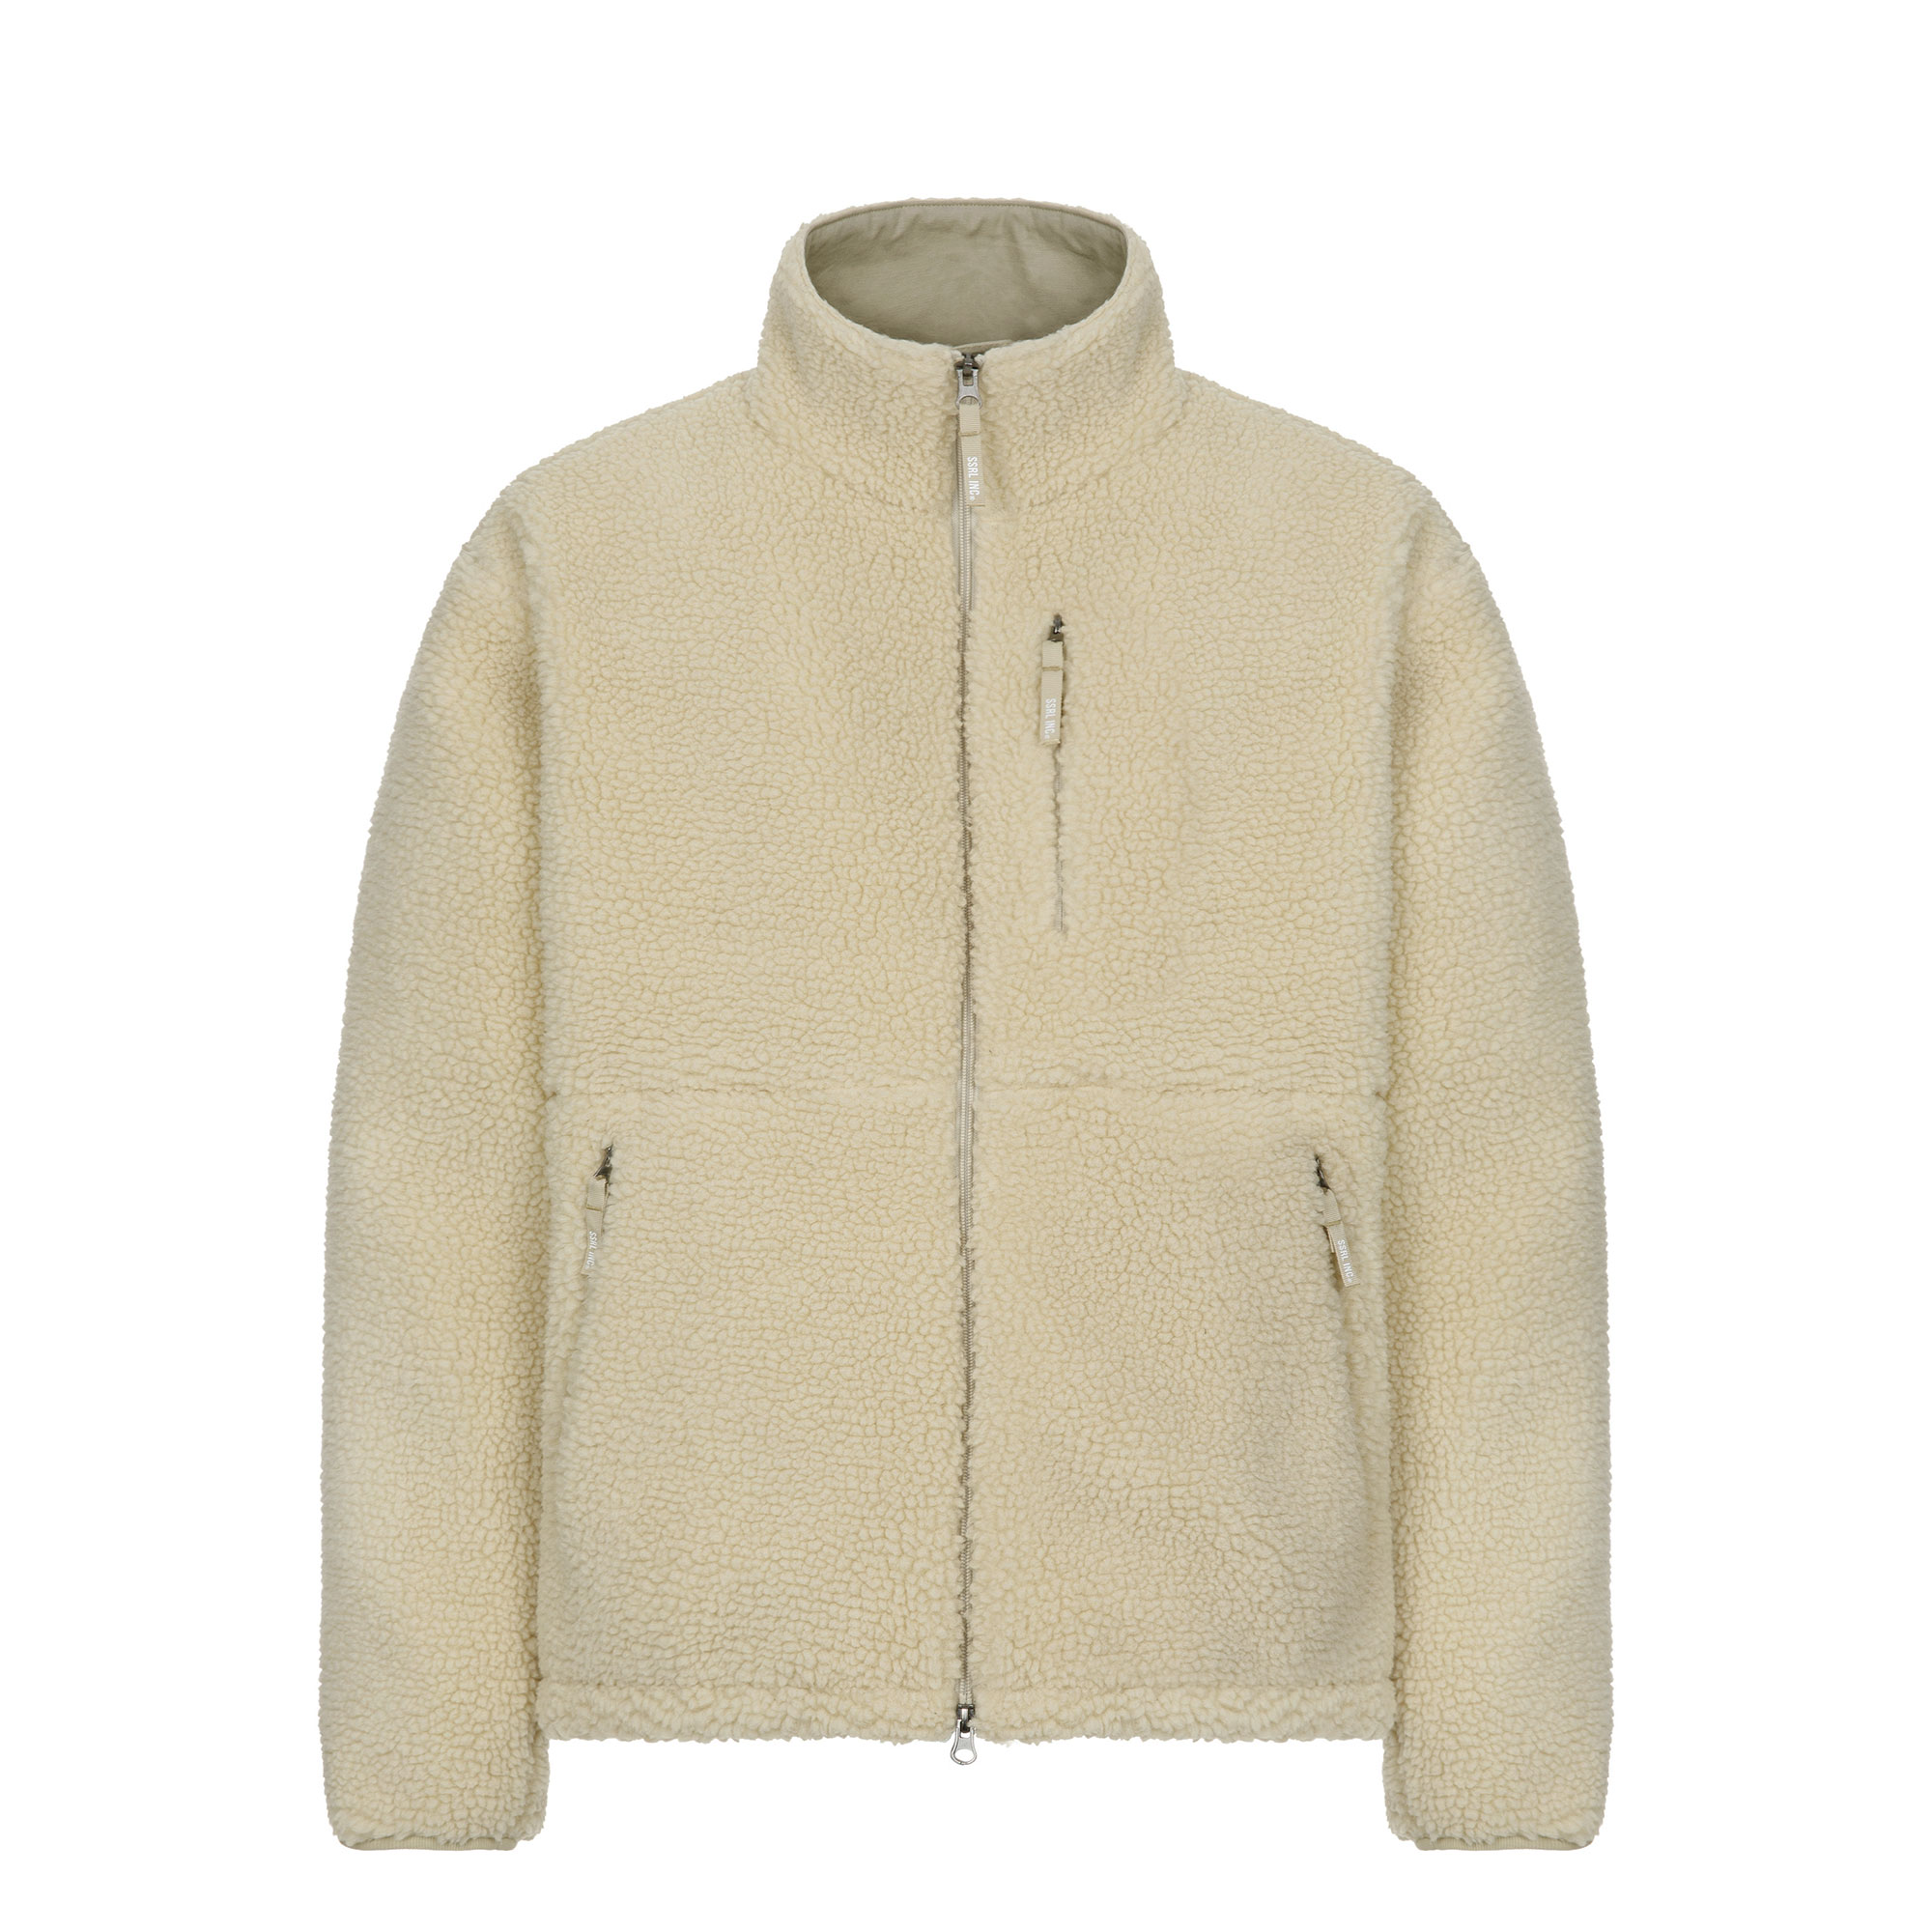 oversize boa fleece jacket / beige